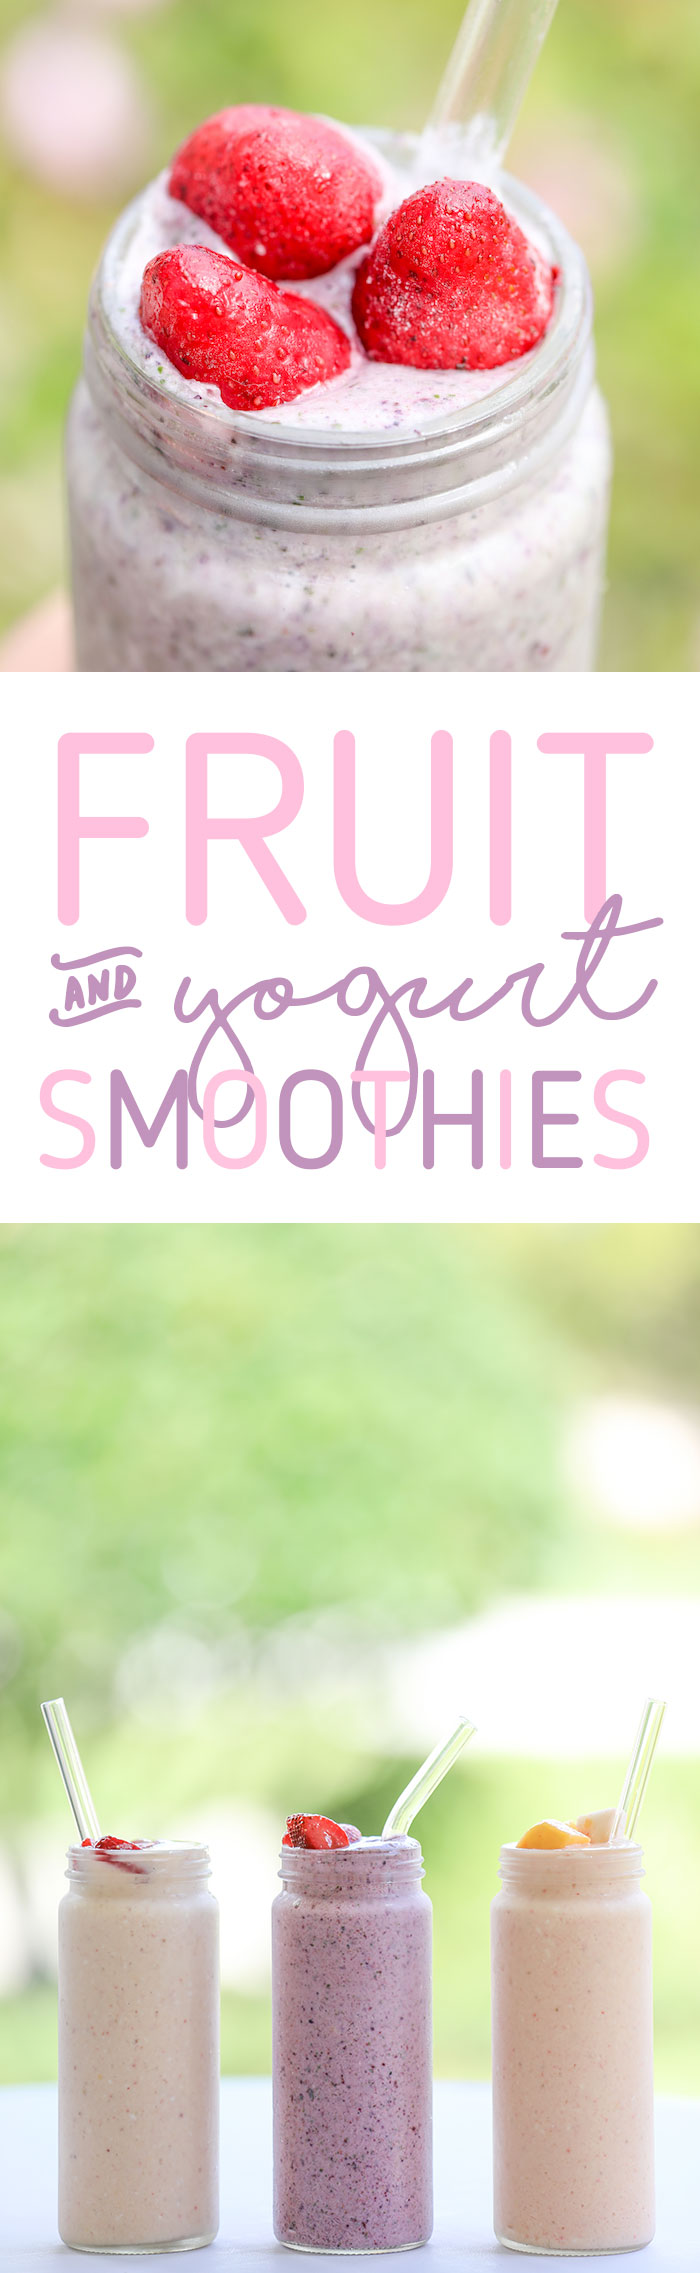 stock up time: fruit & yogurt smoothies